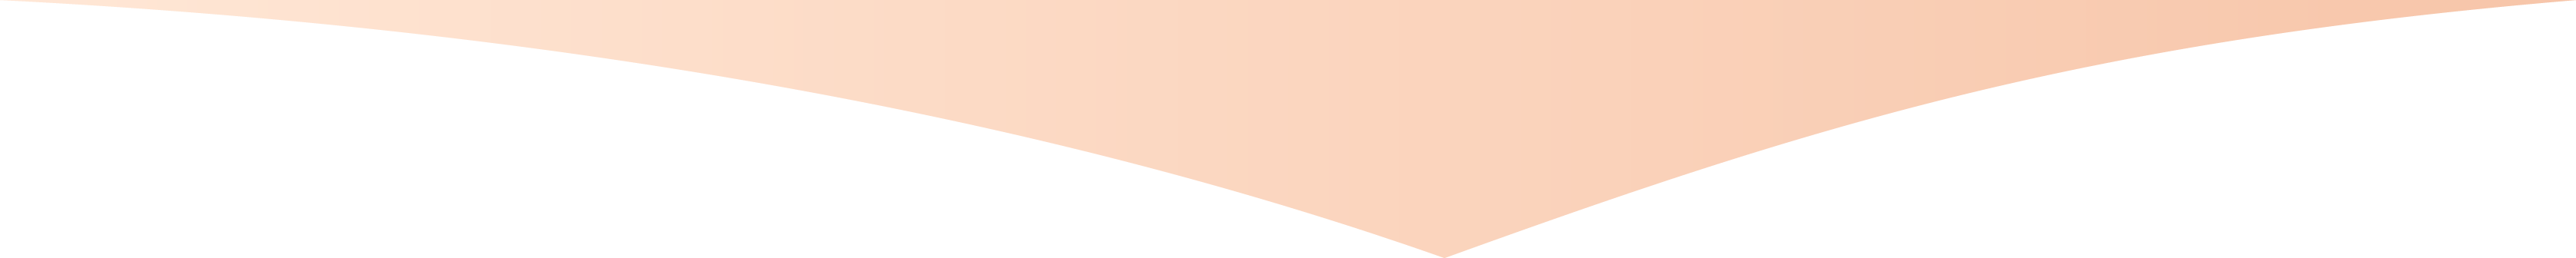 Section divider shape